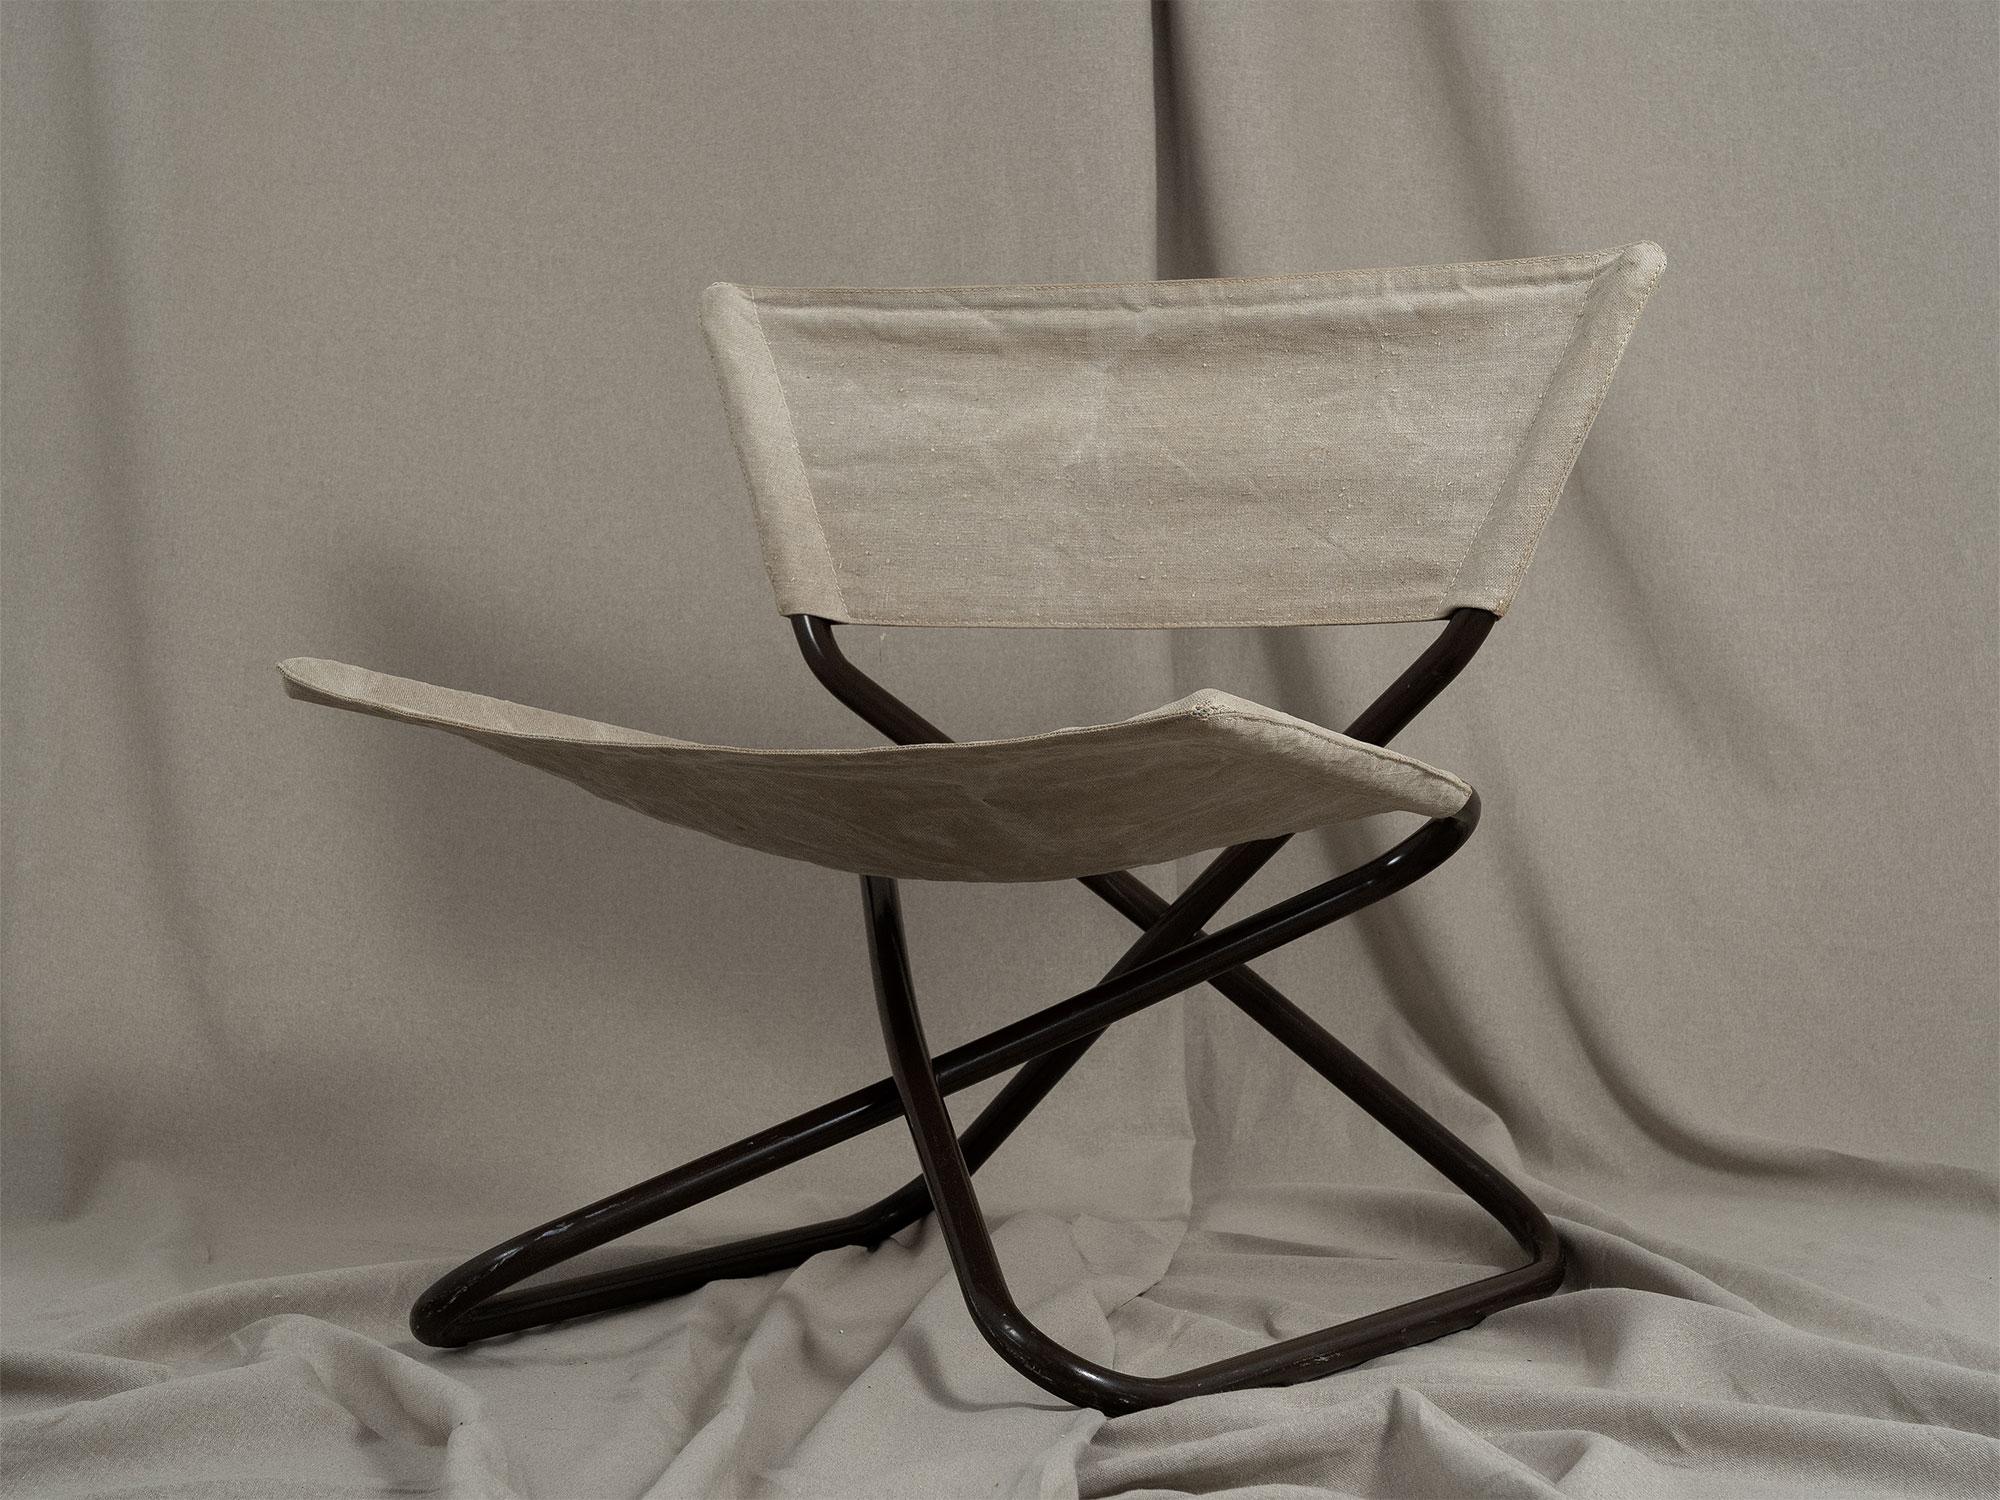 Chaise pliante Z-Down d'Erik Magnussen, produite par Torben Foldes au Danemark en 1968. Structure tubulaire en métal laqué brun foncé avec siège d'origine en toile de lin naturel. Il y a quelques taches d'usure sur le cadre et la toile.